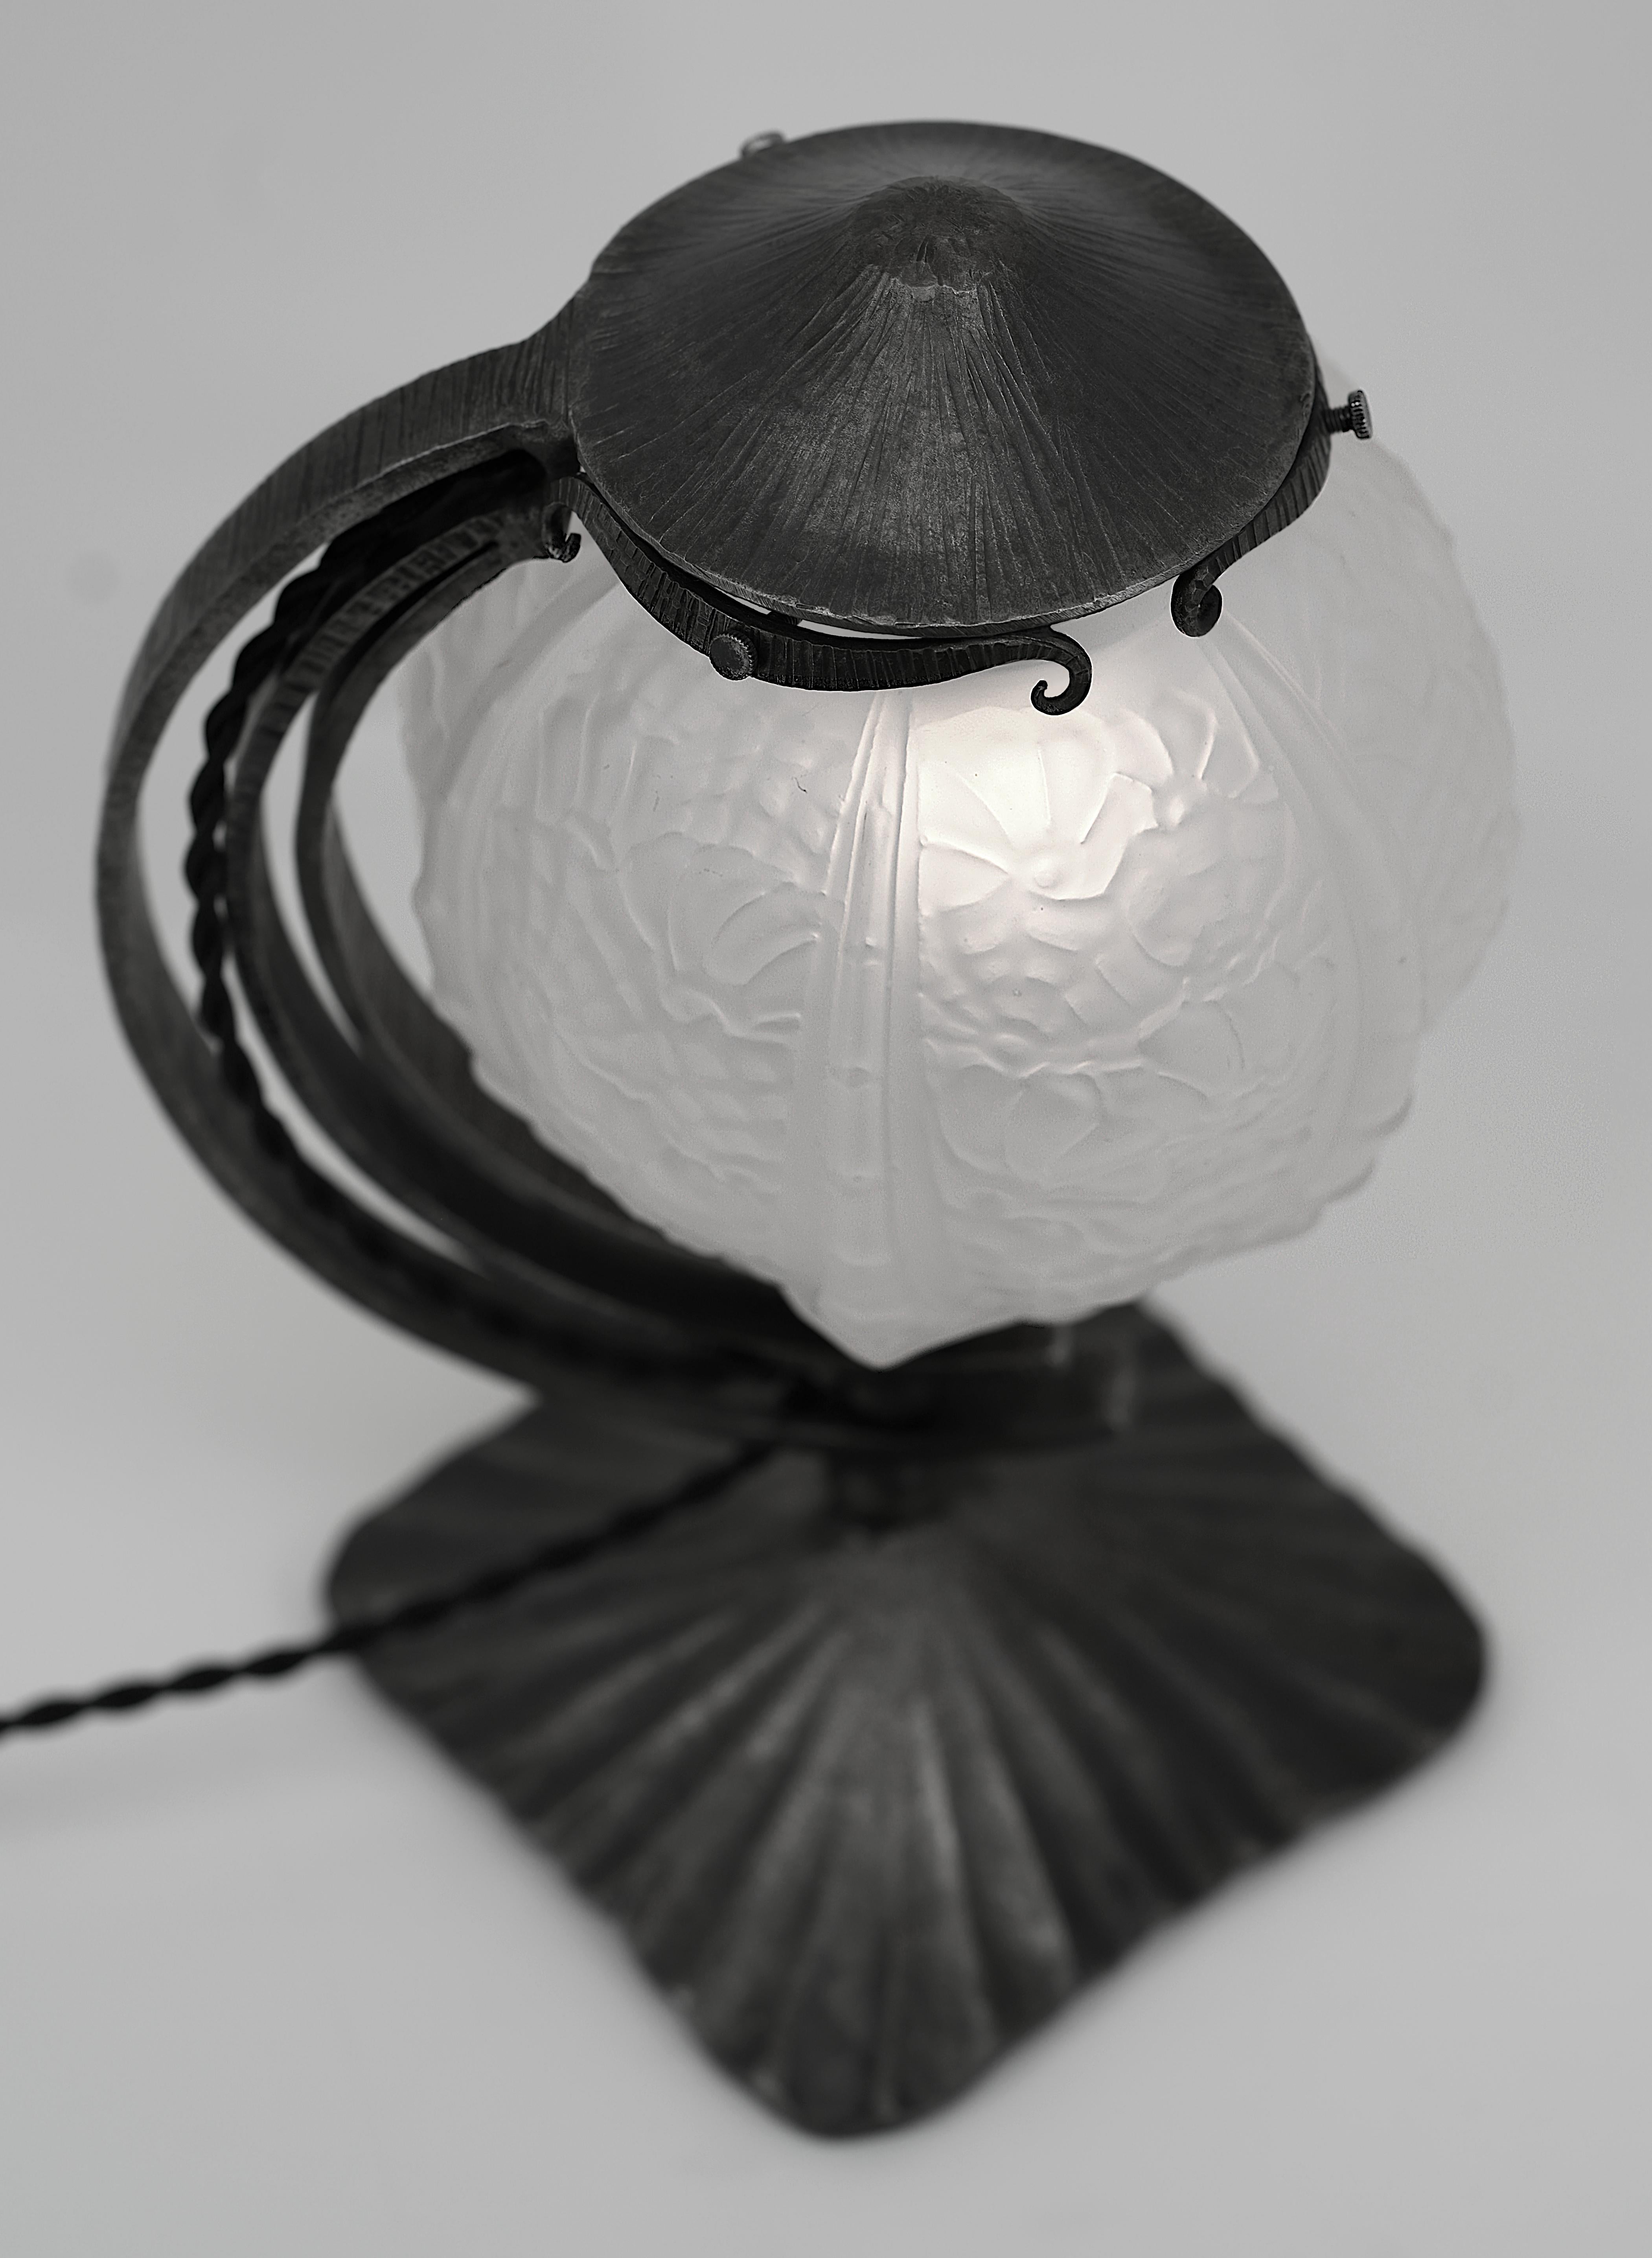 Glass Cherrier & Besnus French Art Deco Table Lamp, Ca.1925 For Sale